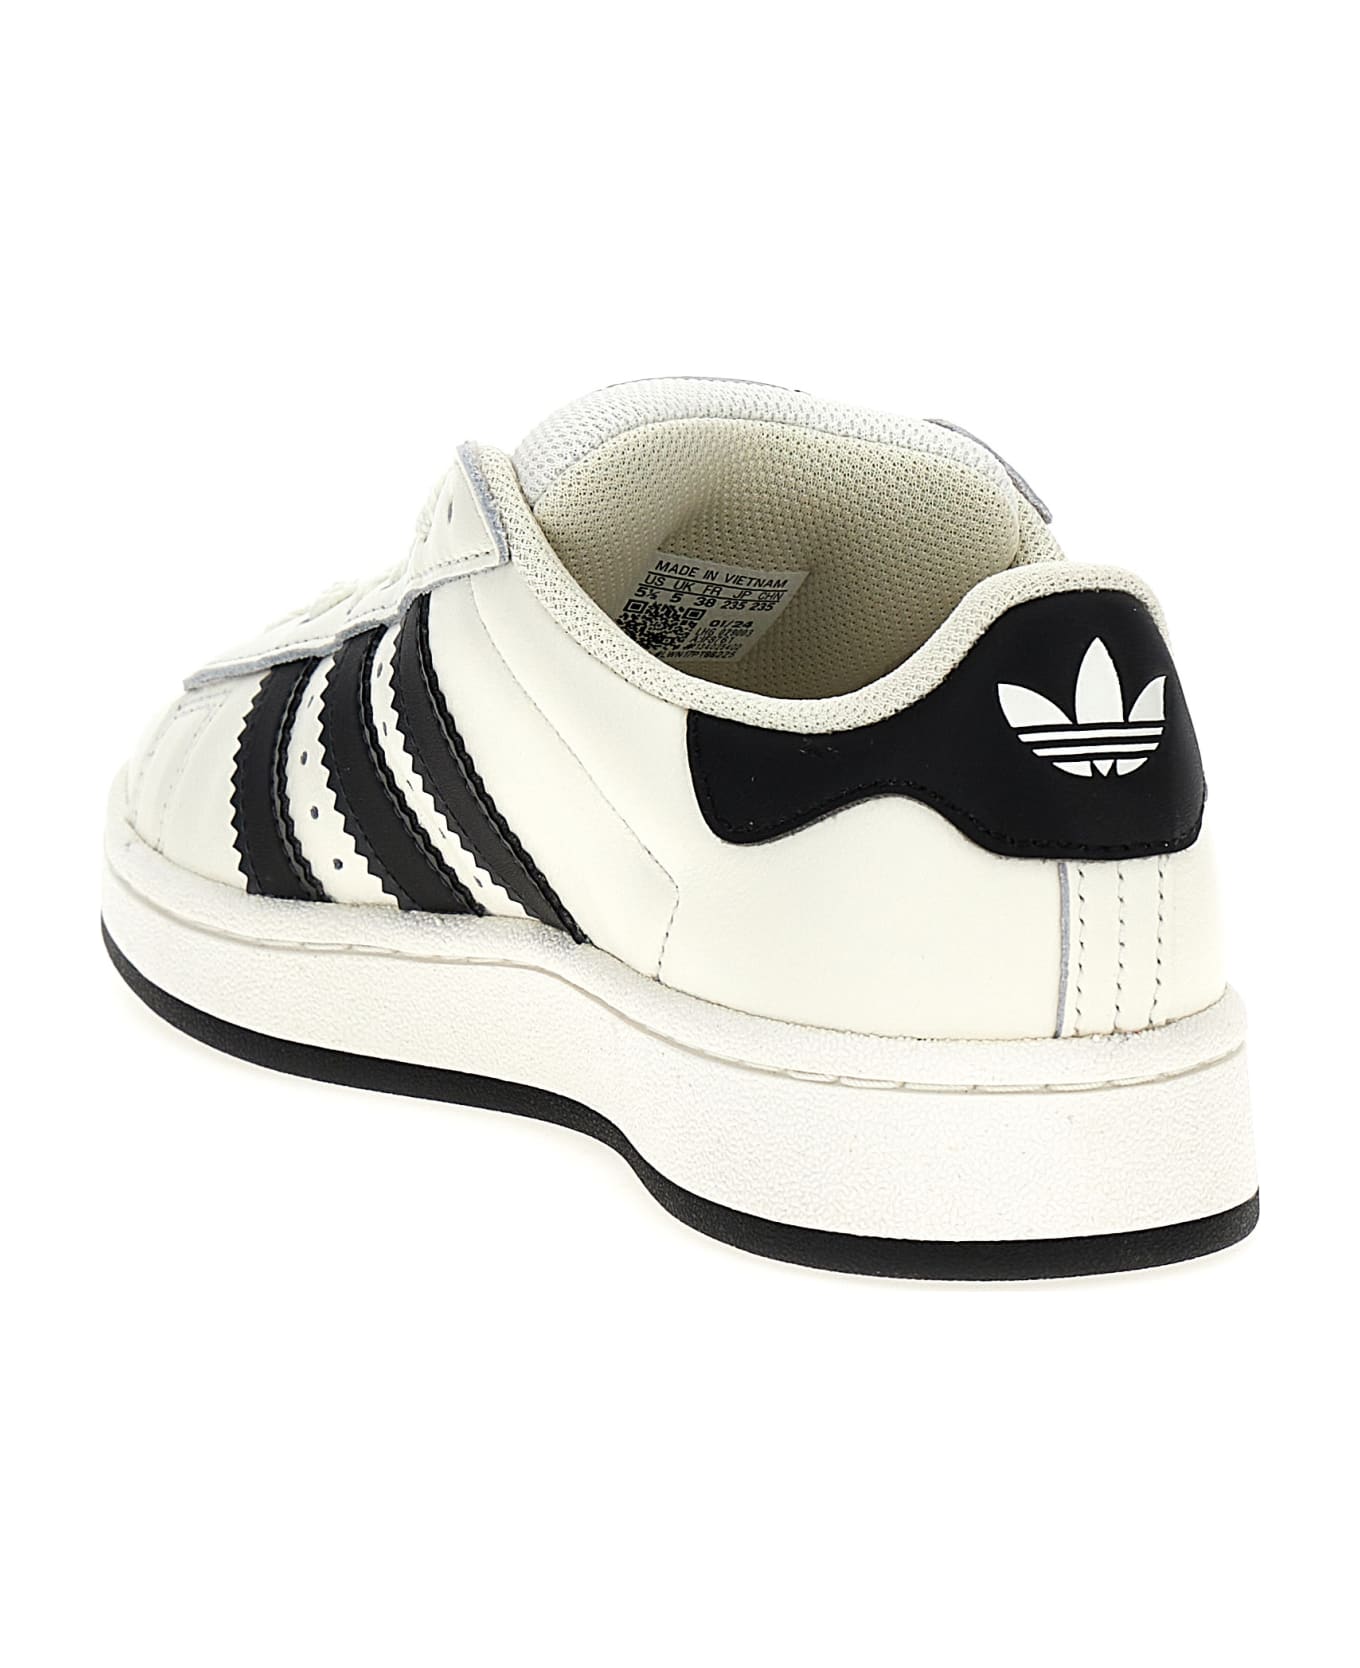 Adidas Originals 'campus 00s' Sneakers - White/Black